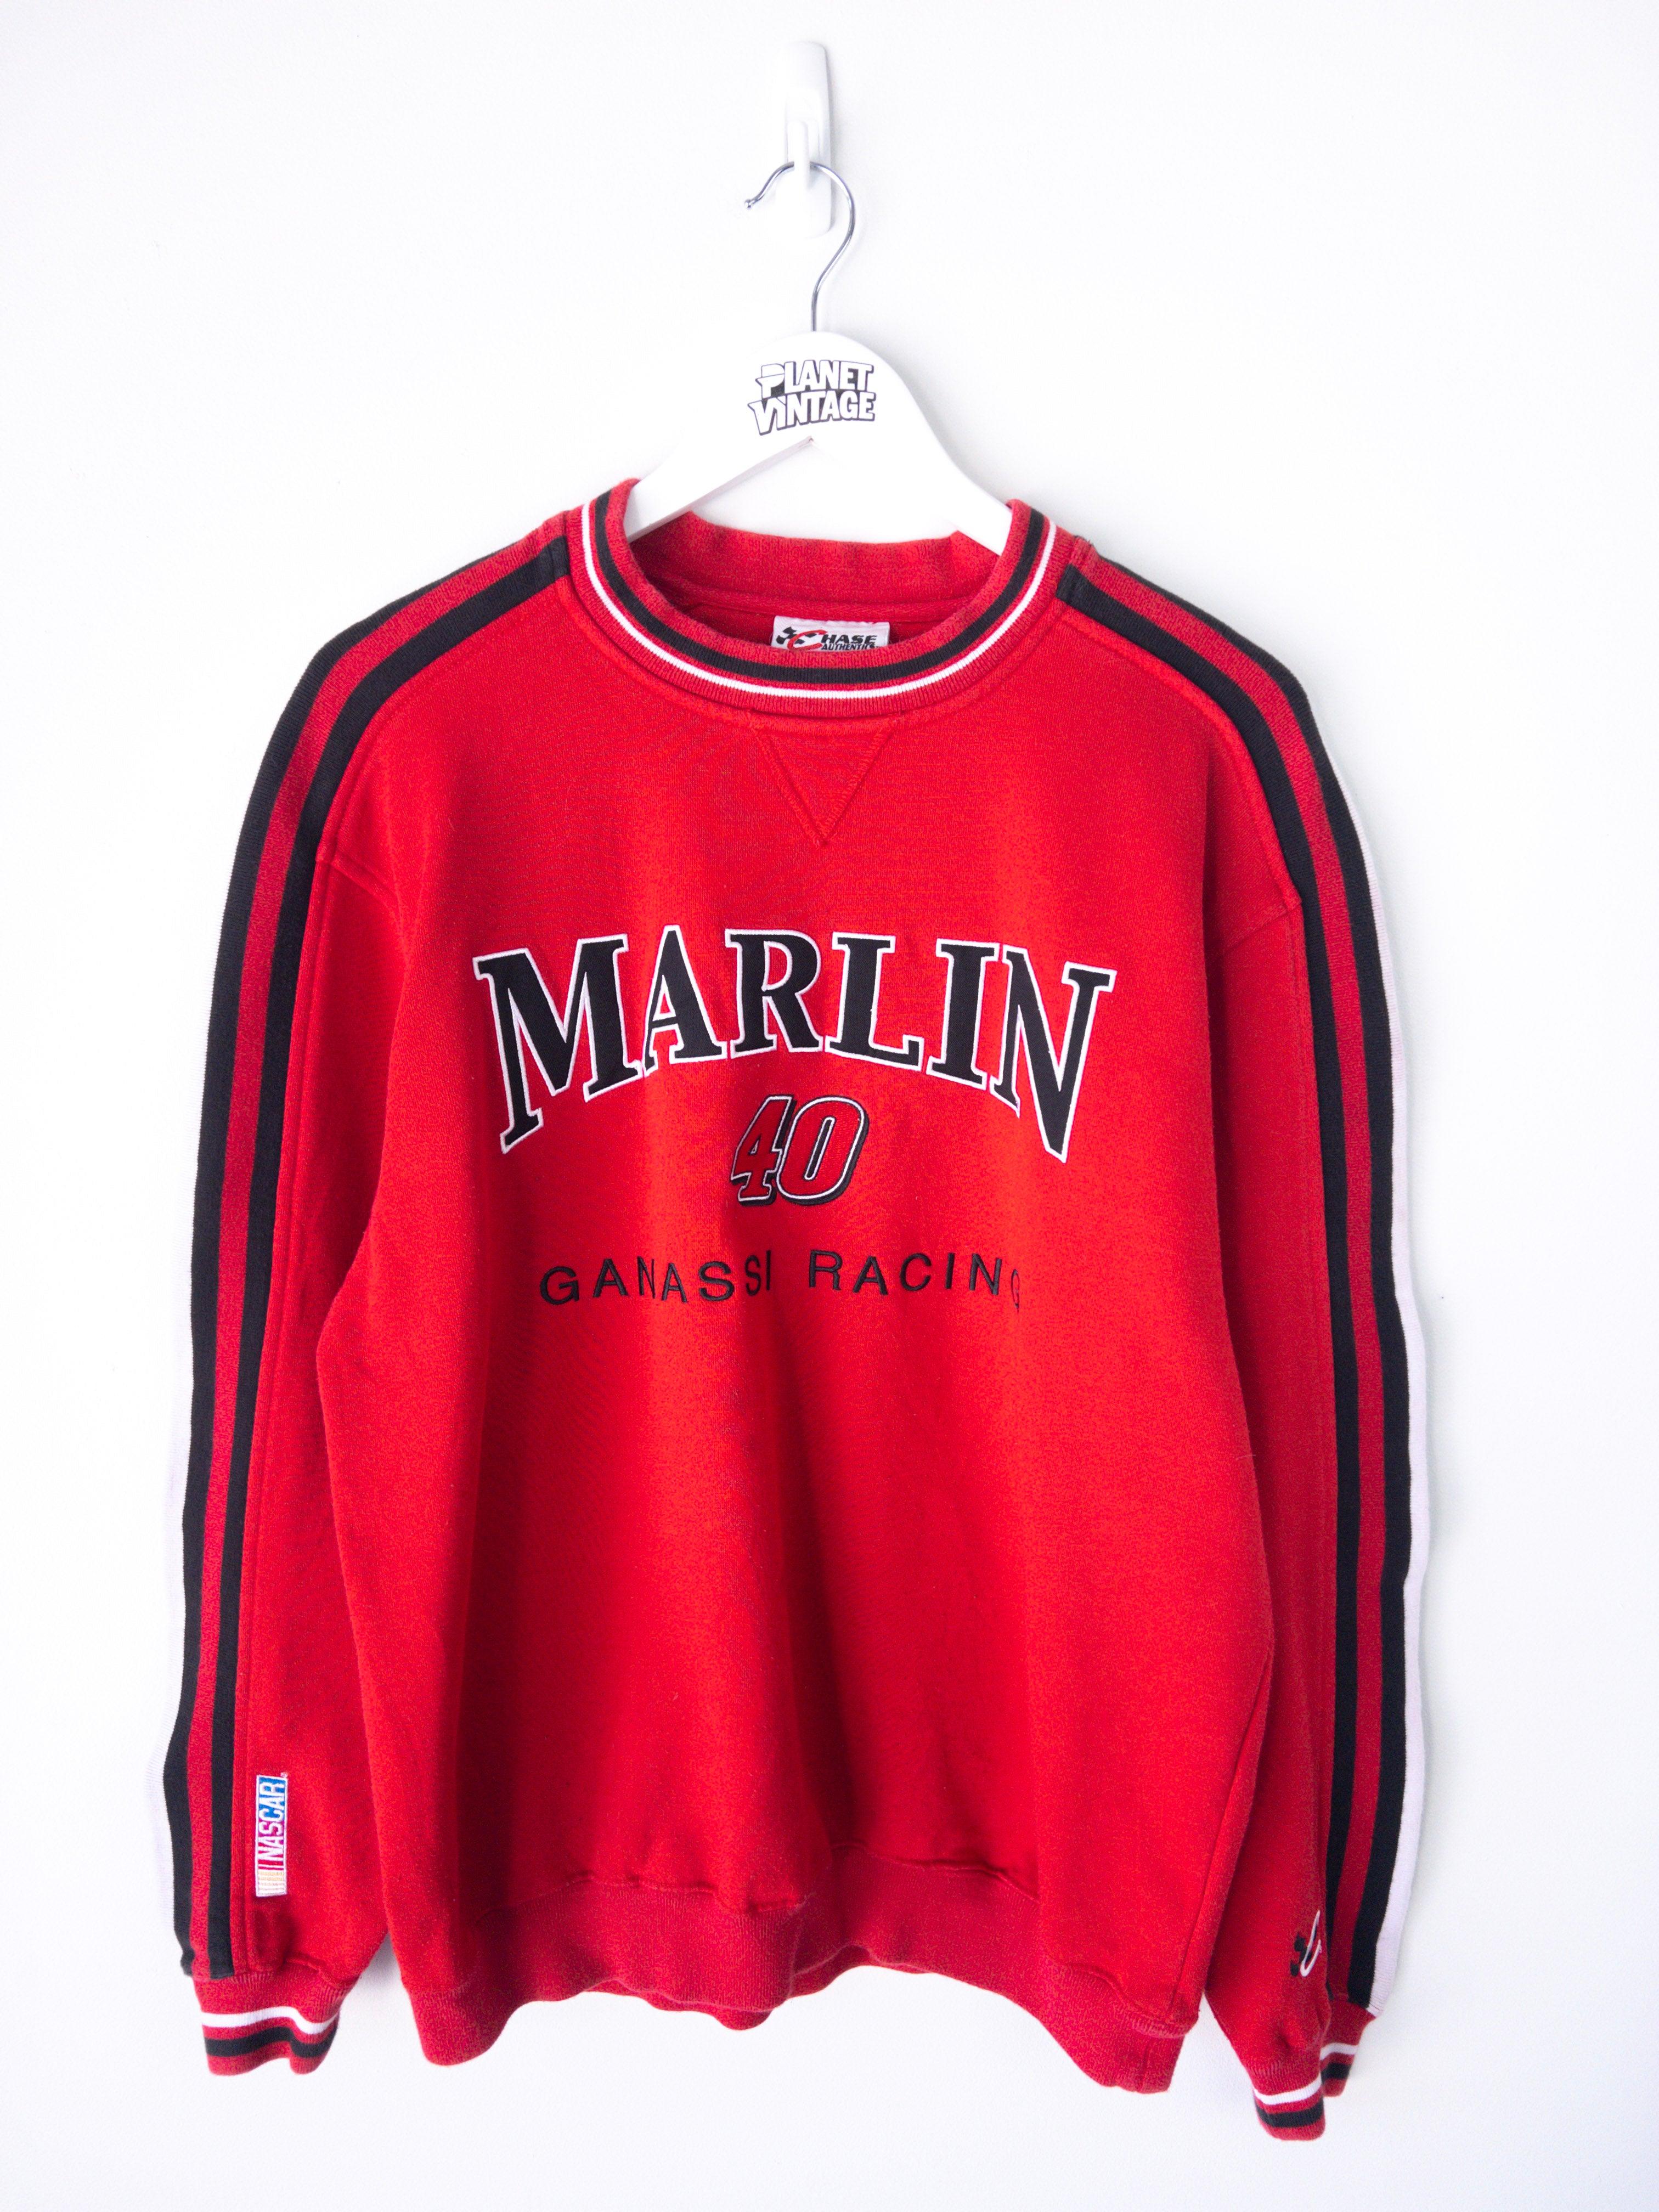 Vintage Sterling Marlin Ganassi Racing Sweatshirt (L) - Planet Vintage Store